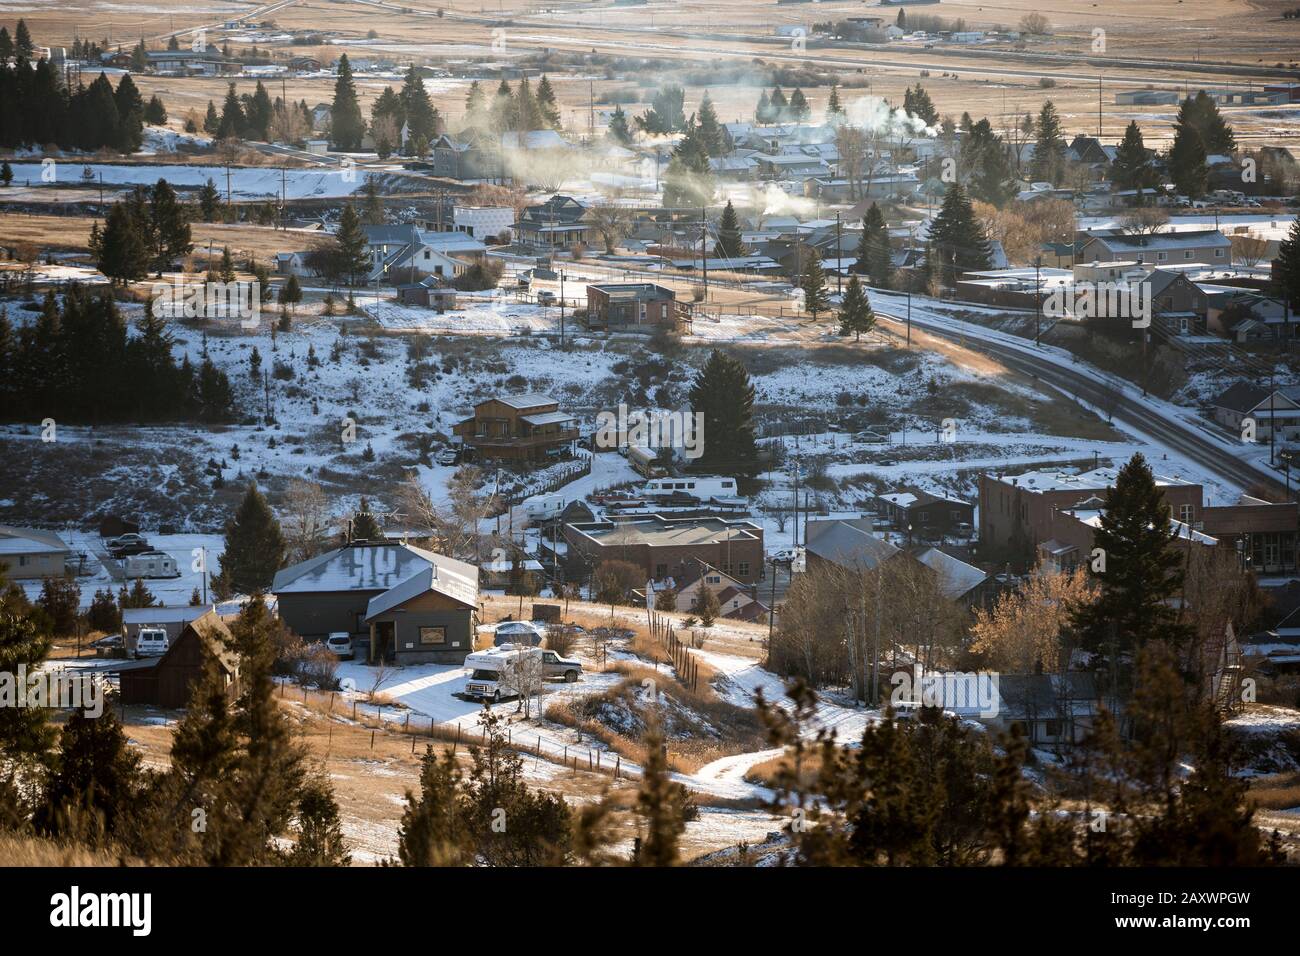 Thie rural town of Philipsburg, Montana. Stock Photo